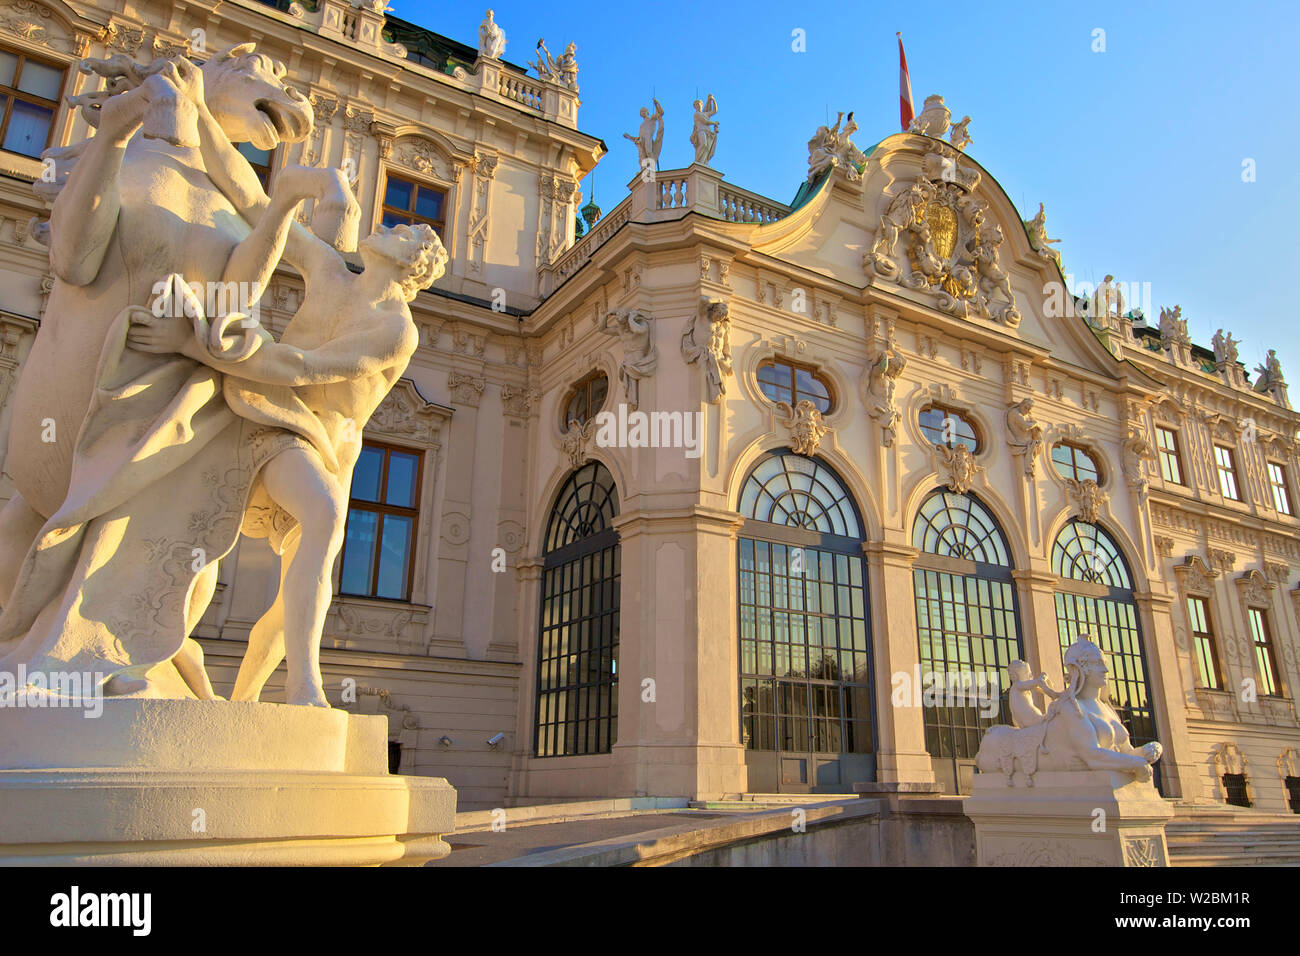 Palais du Belvédère supérieur, Vienne, Autriche, Europe Centrale Banque D'Images